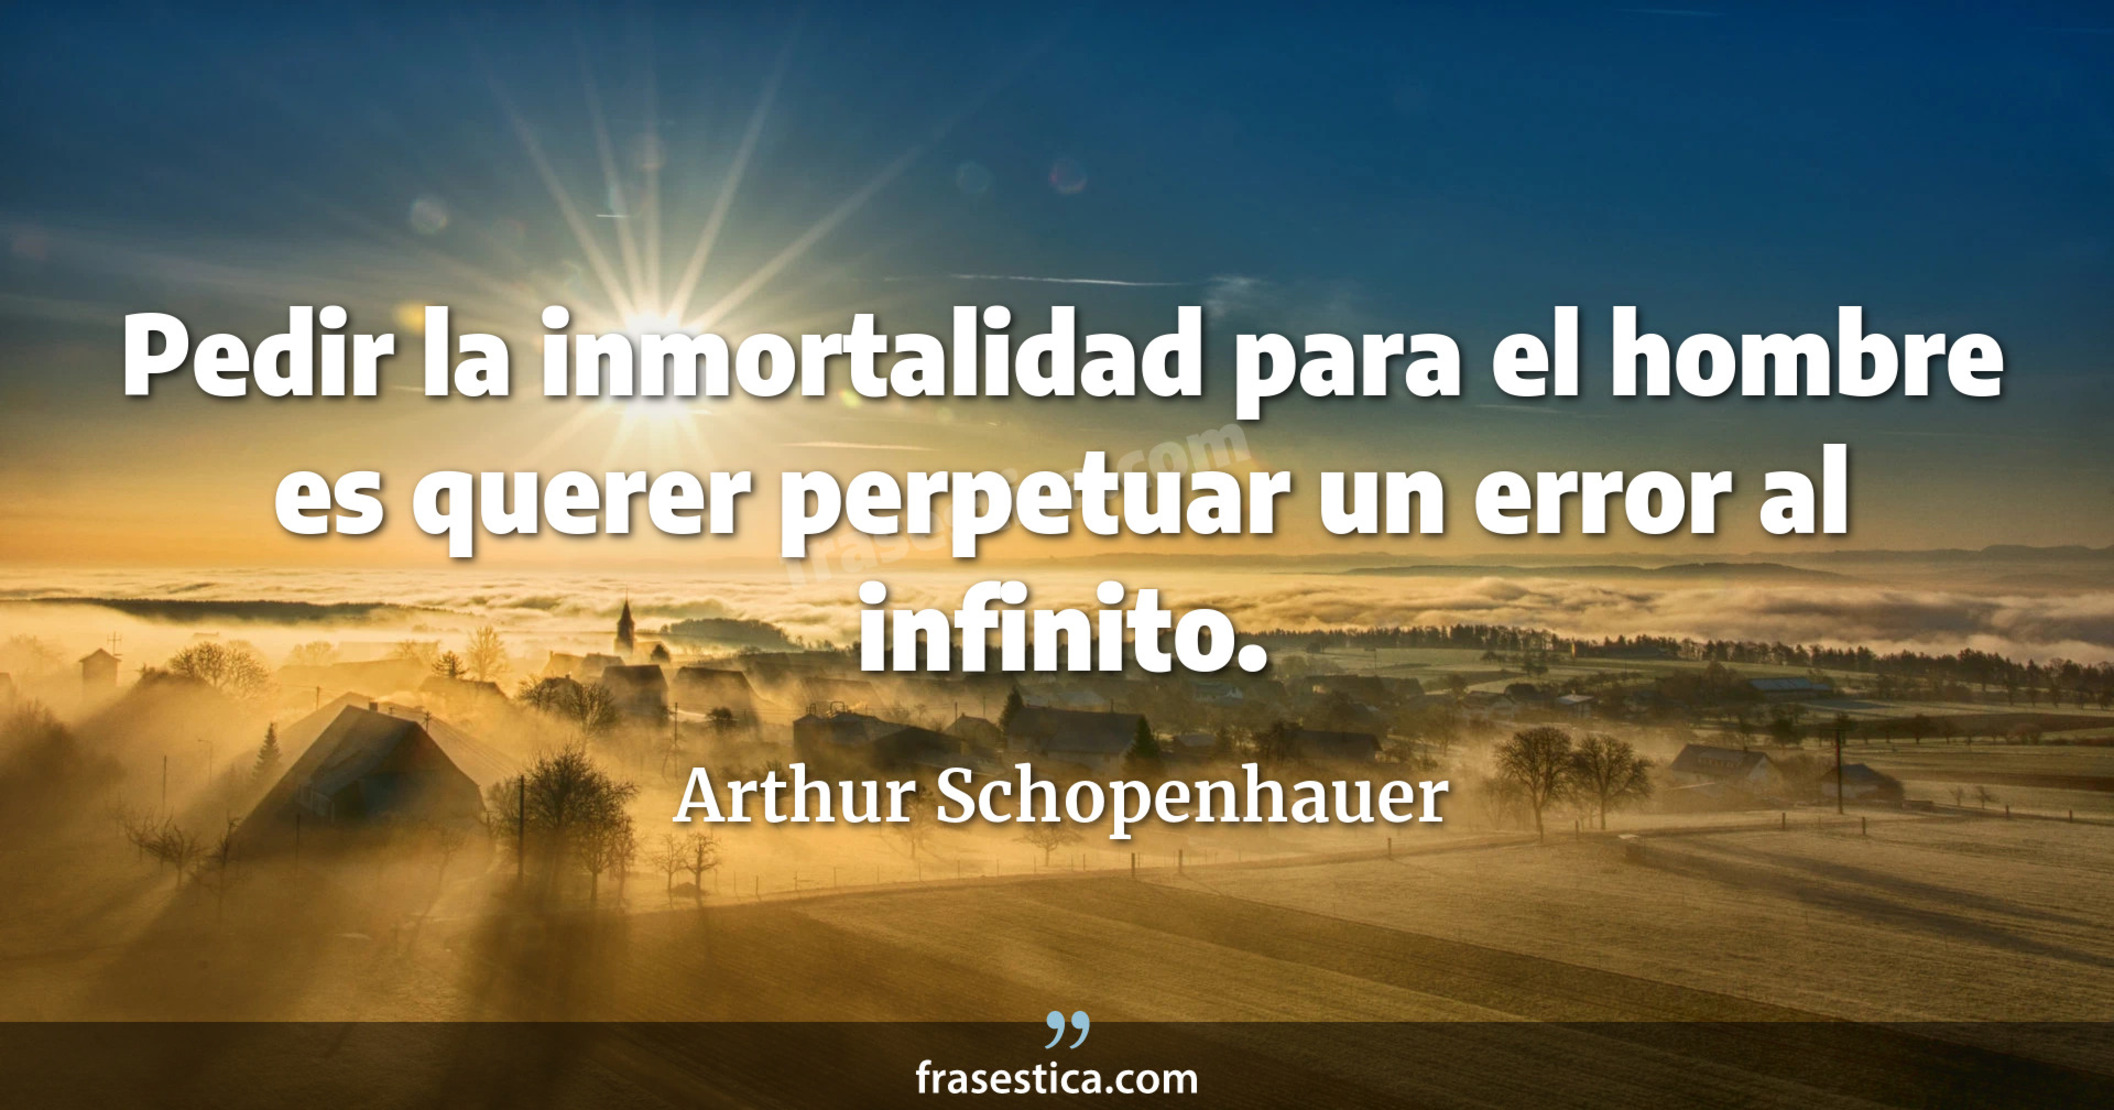 Pedir la inmortalidad para el hombre es querer perpetuar un error al infinito. - Arthur Schopenhauer